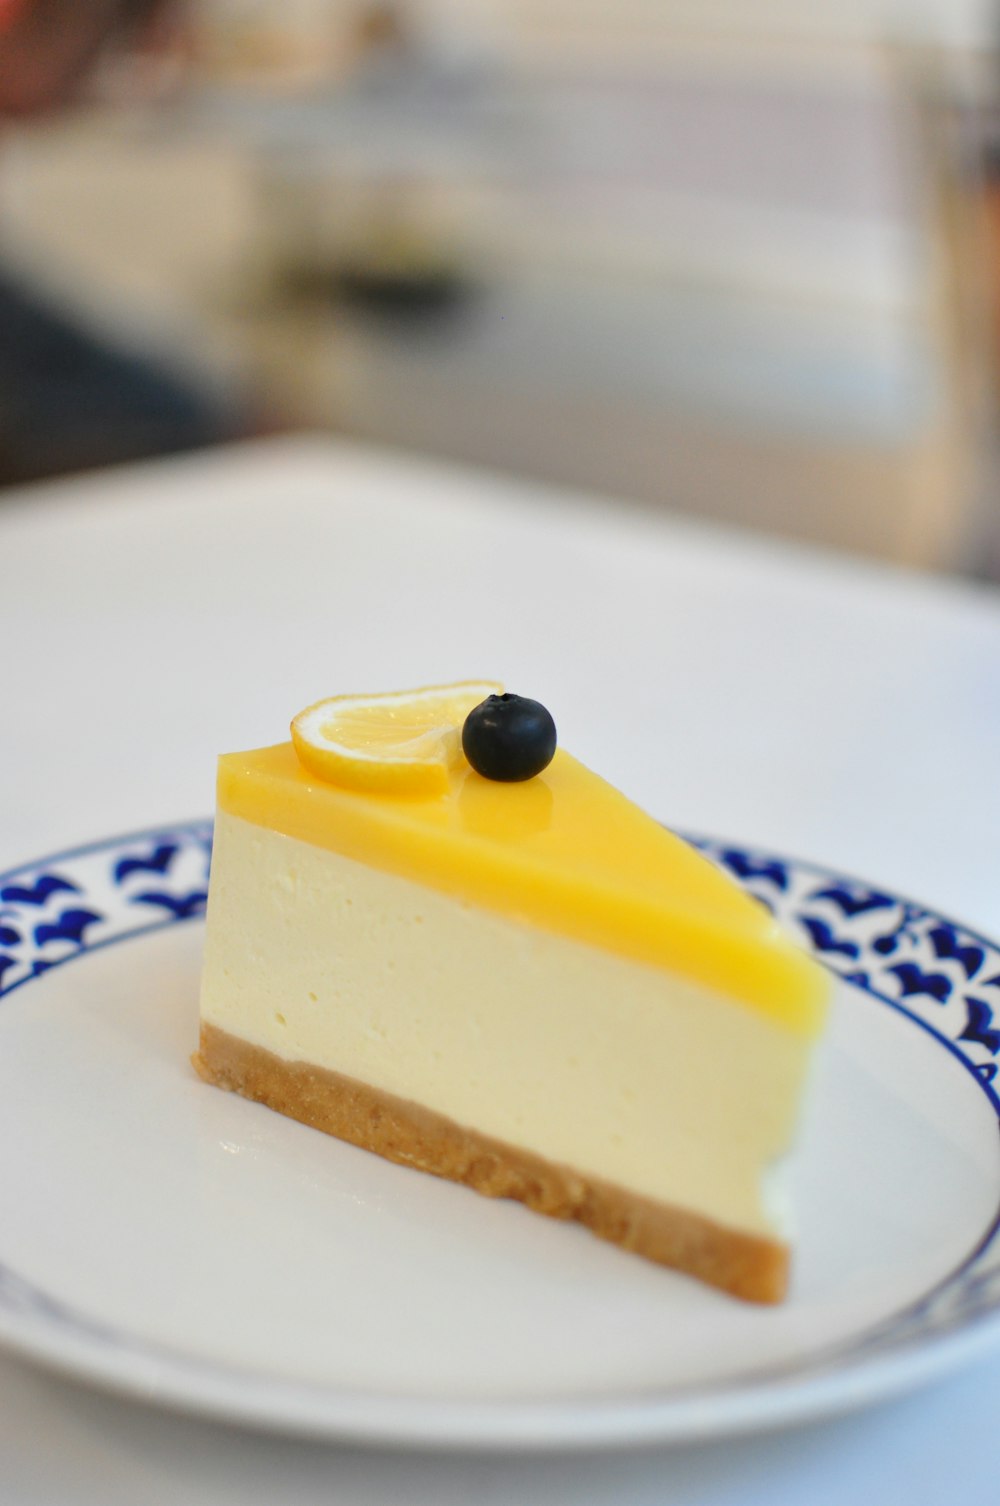 白と青の陶板に黄色いケーキ